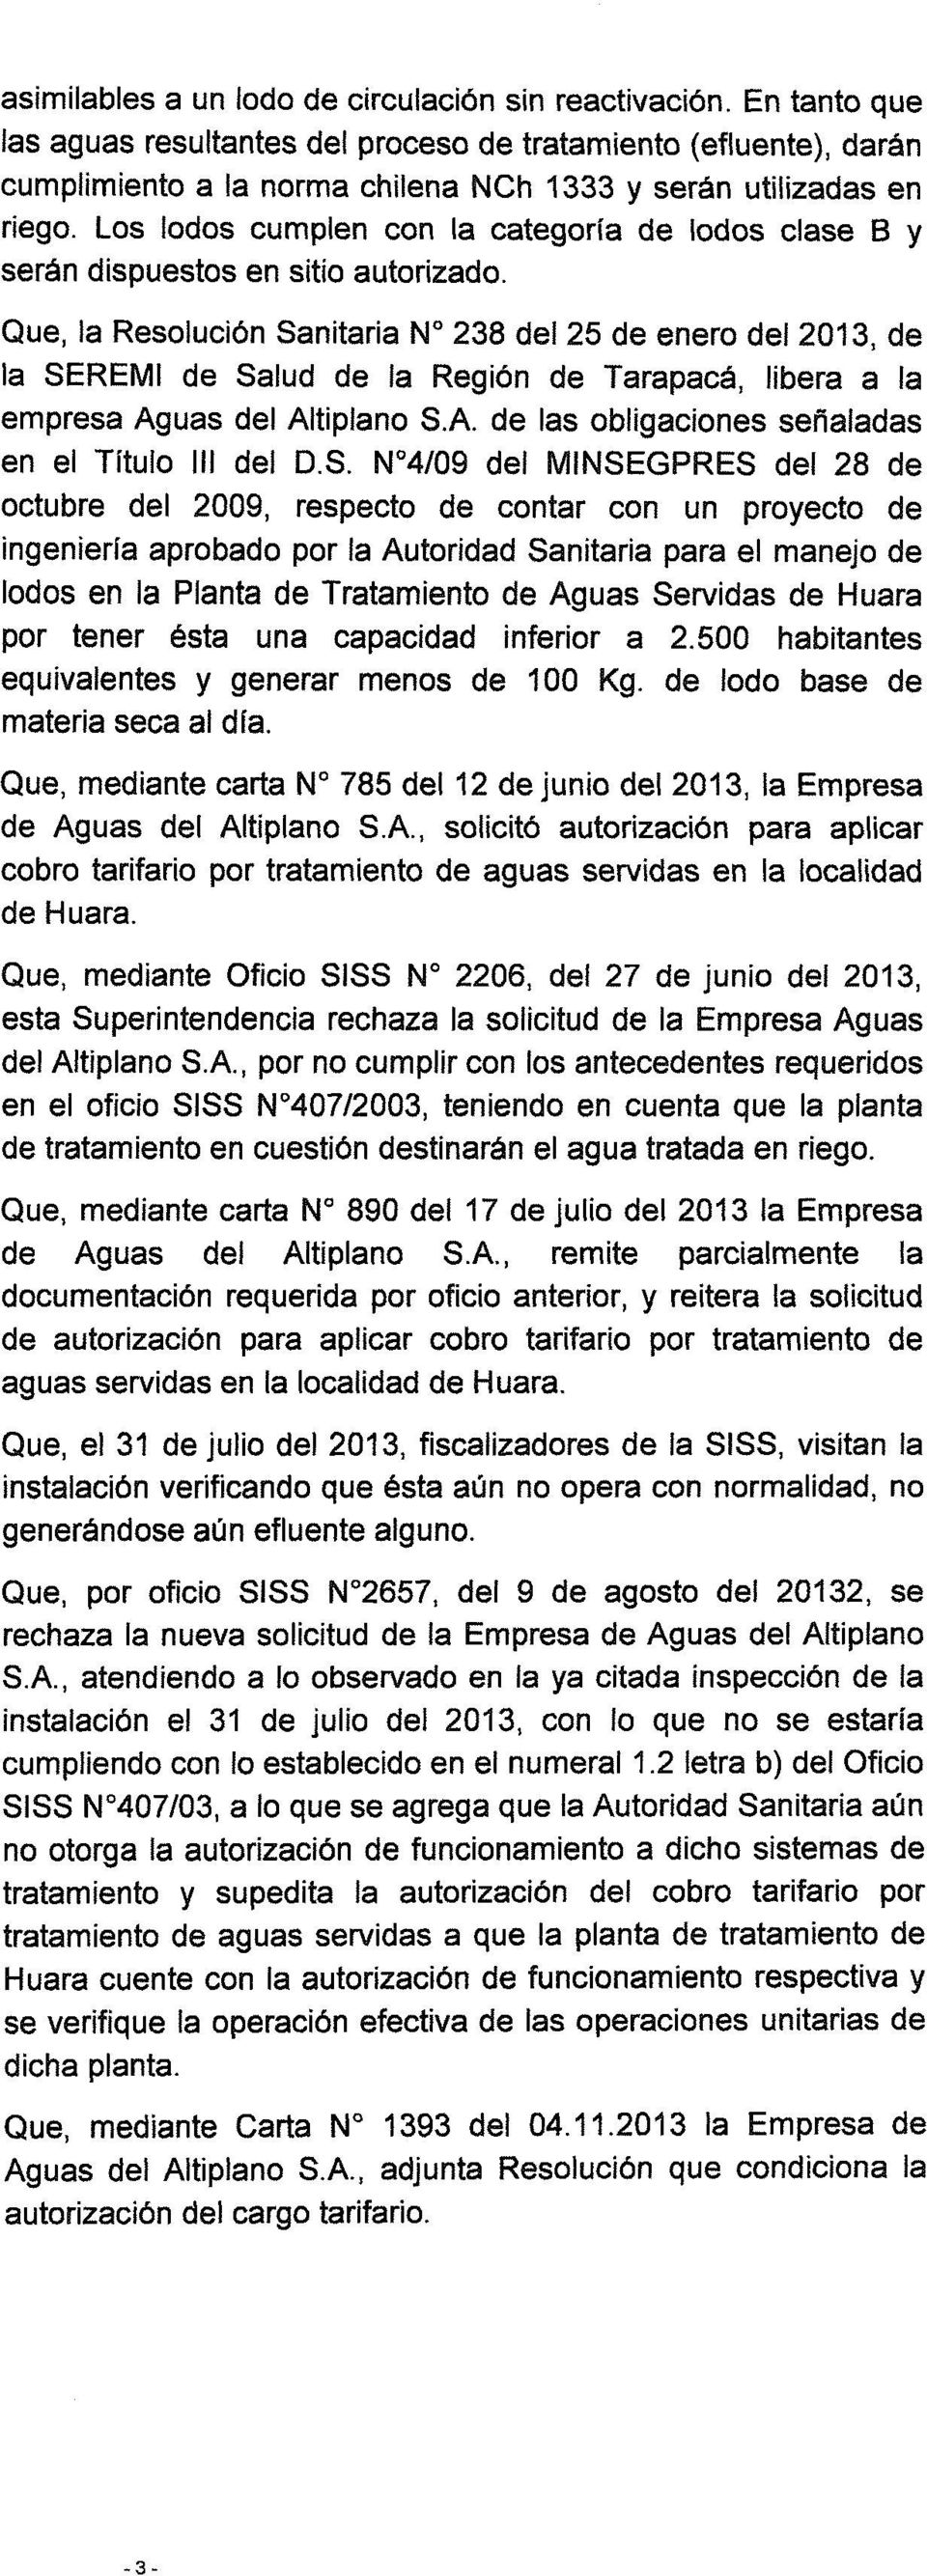 Que, la Reslución Sanitaria N 238 del 25 de ener del 2013, de la SEREMI de Salud de la Región de Tarapacá, libera a la empresa Aguas del Altiplan S.A. de las bligacines señaladas en el Títul III del D.